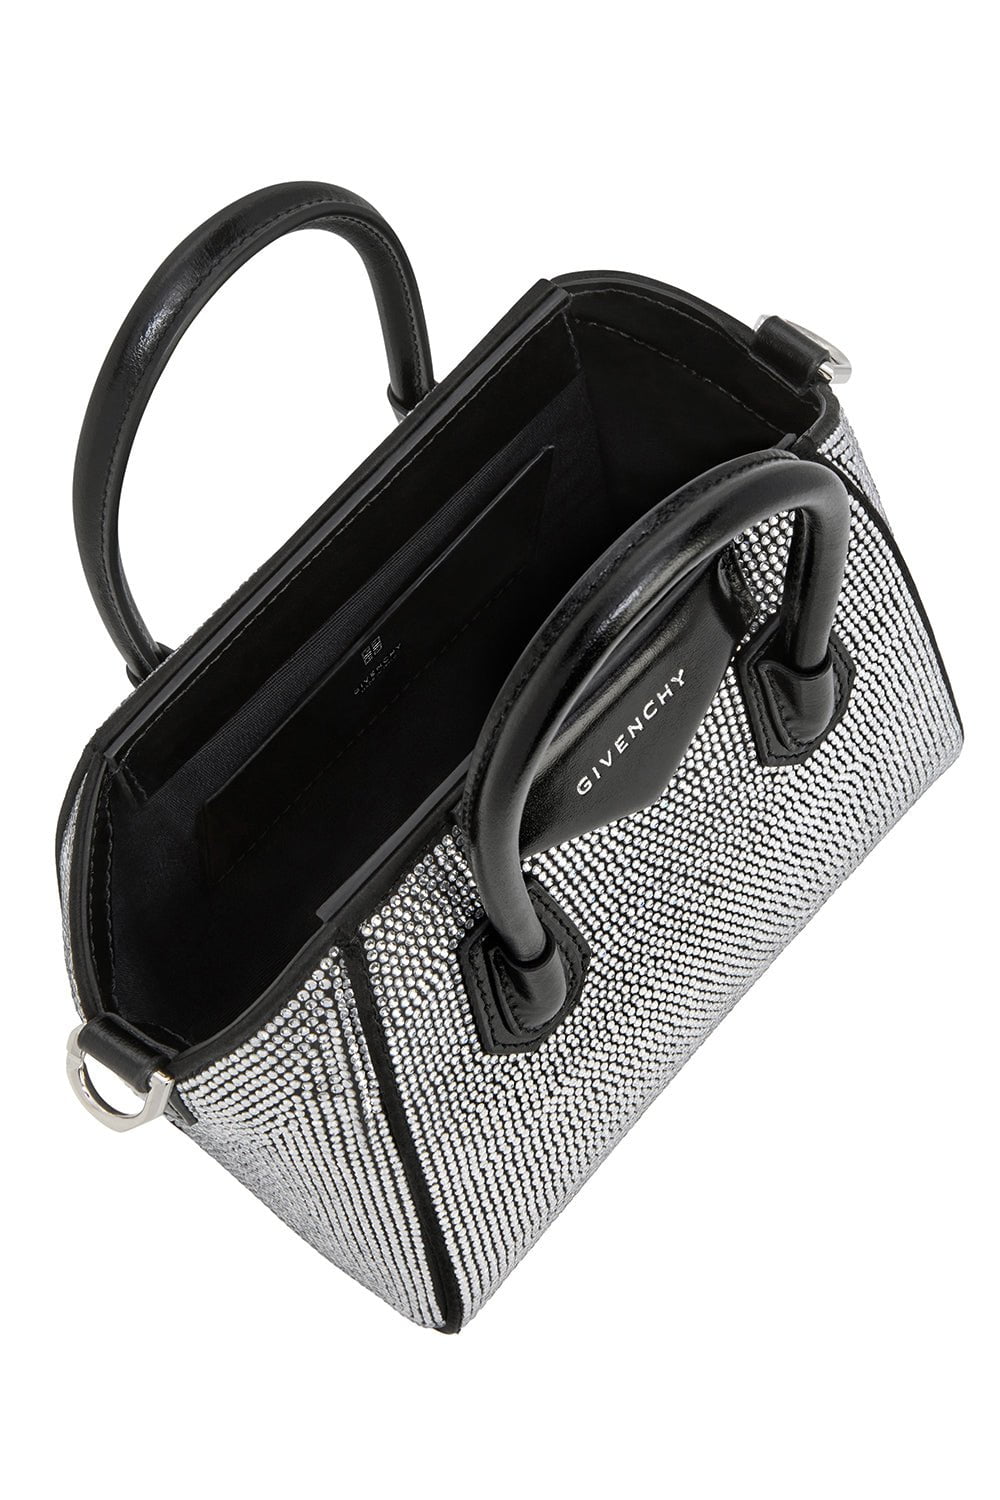 Antigona Micro Leather Tote Bag in Black - Givenchy